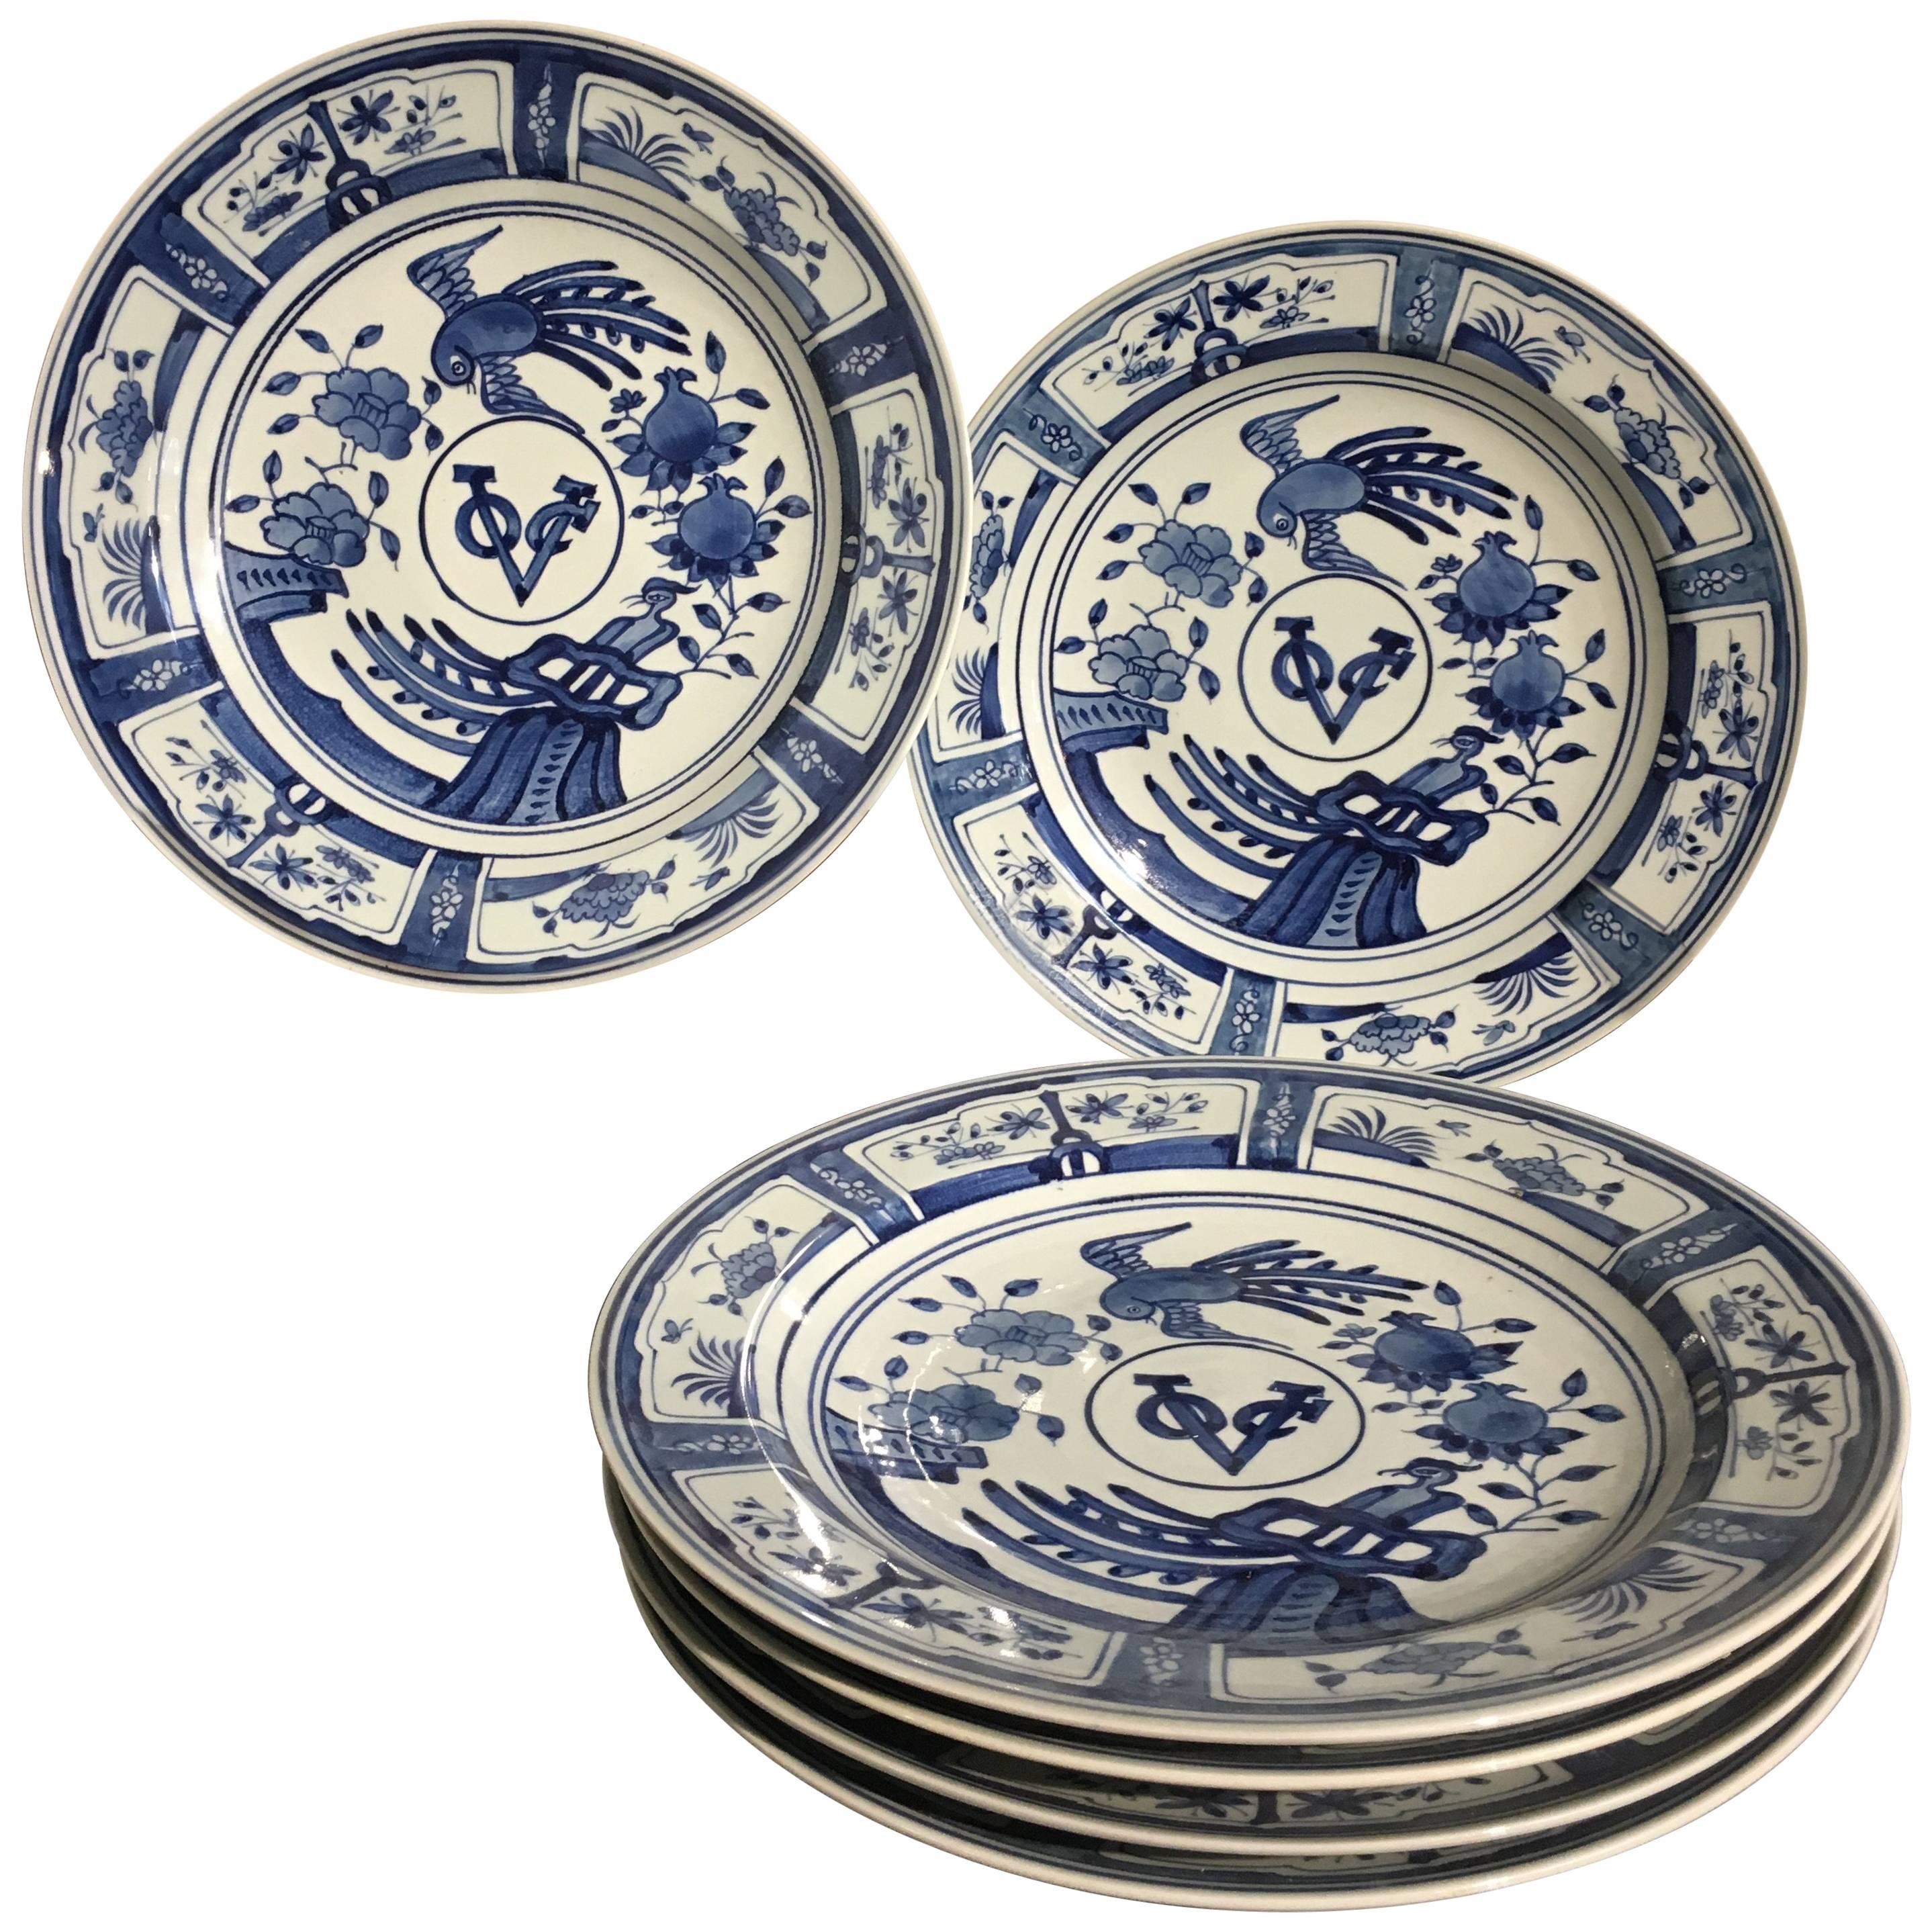 Sechs blau-weiße Porzellanschalen im chinesischen Exportstil der VOC-Zeit, 20. Jahrhundert